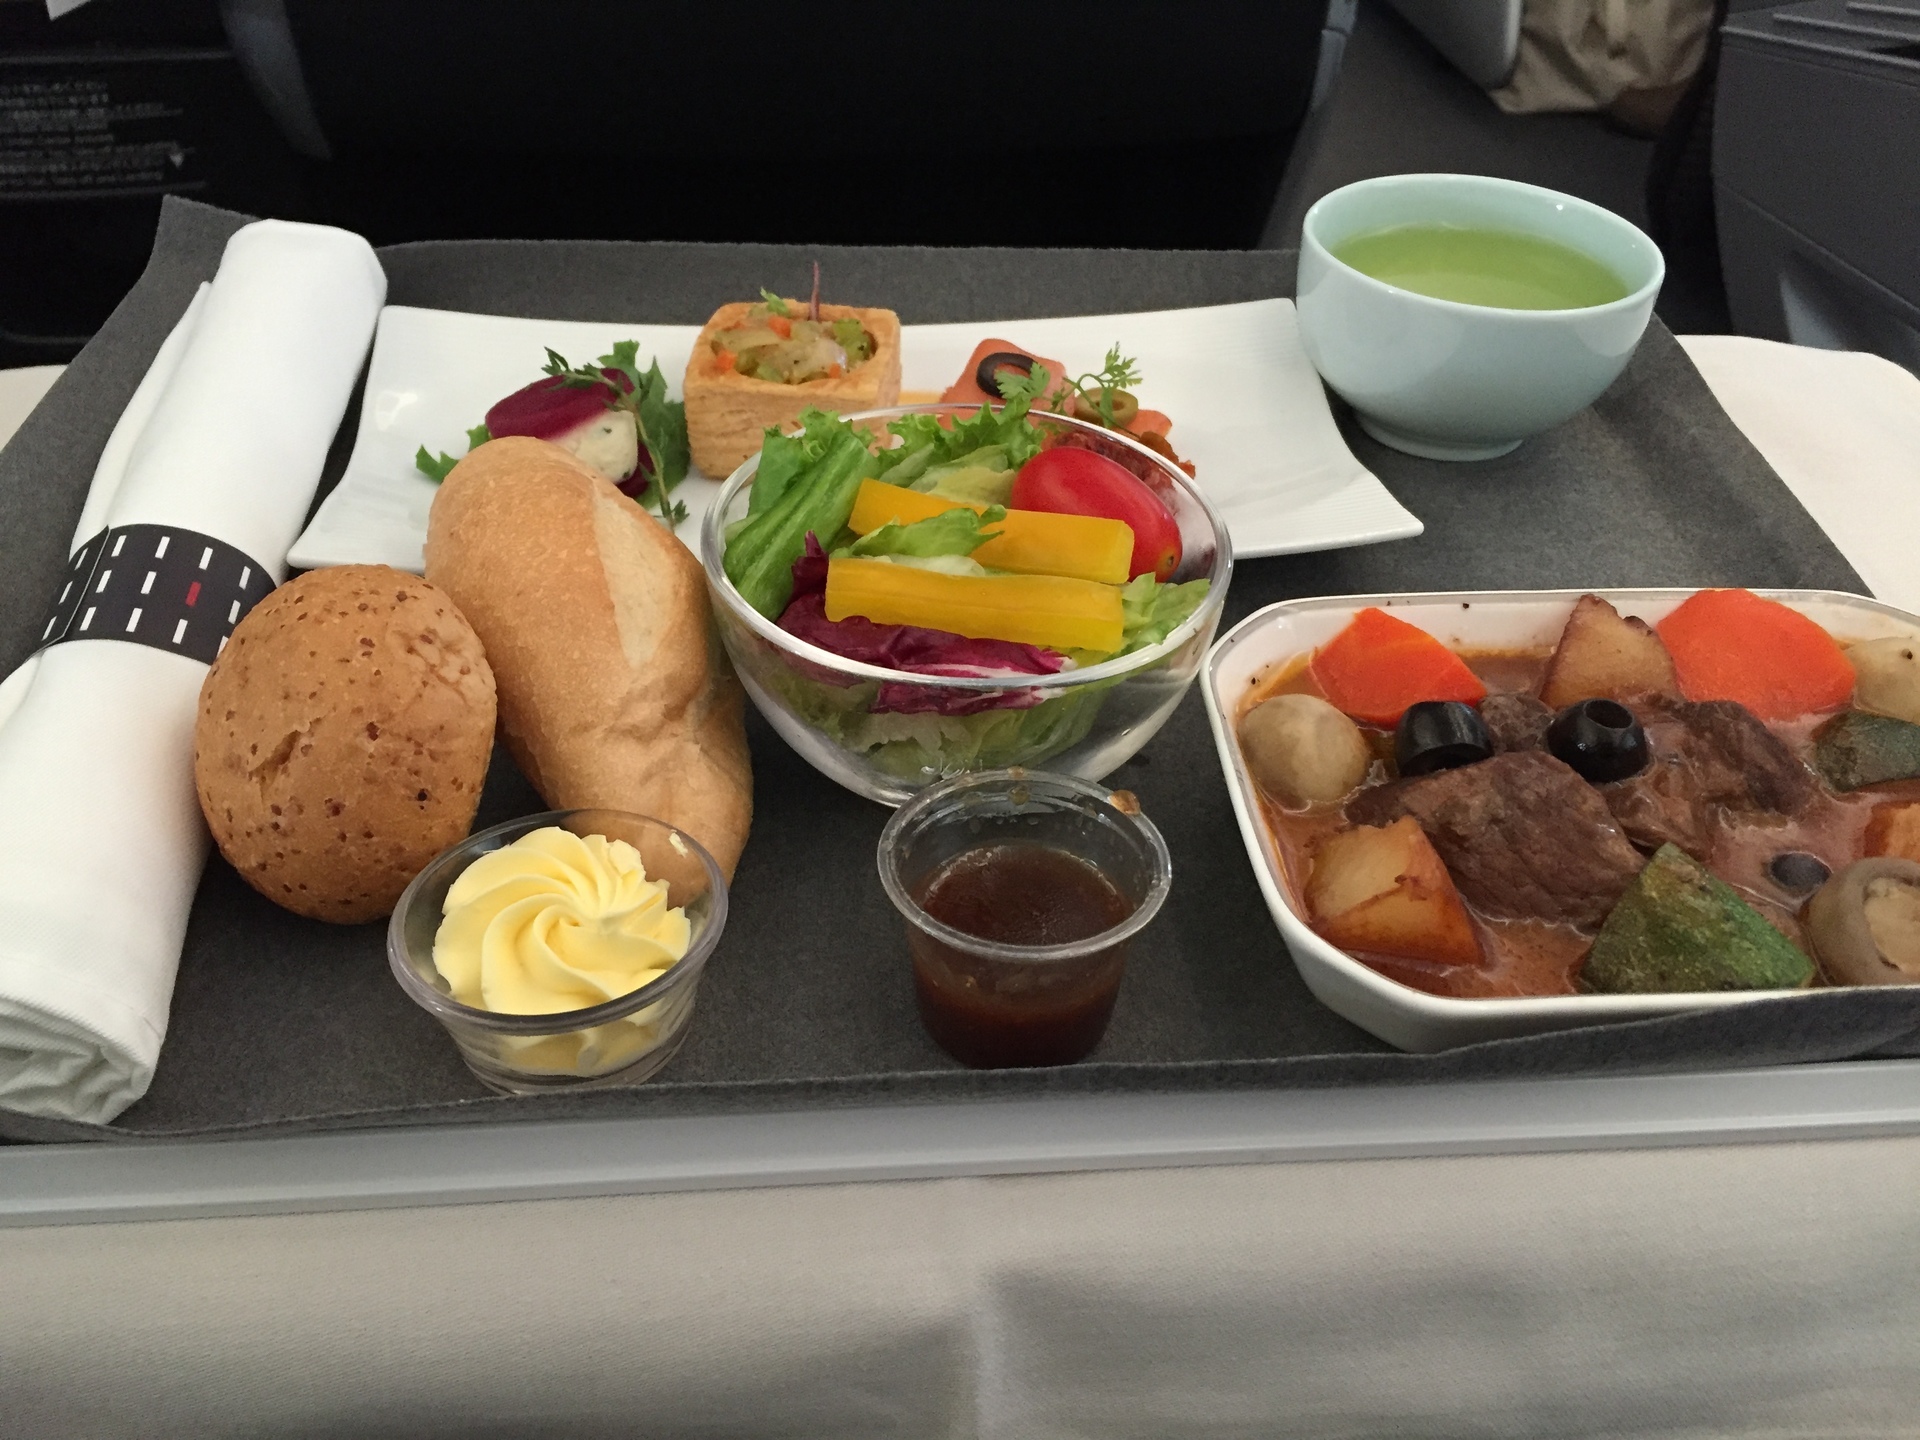 桃園国際空港 Tpe 関空 Kix のビジネスクラス機内食 です 日本航空jal キャセイパシフィックcx クレジットカードを活用しお得に旅するミセスのちょっとイイ話